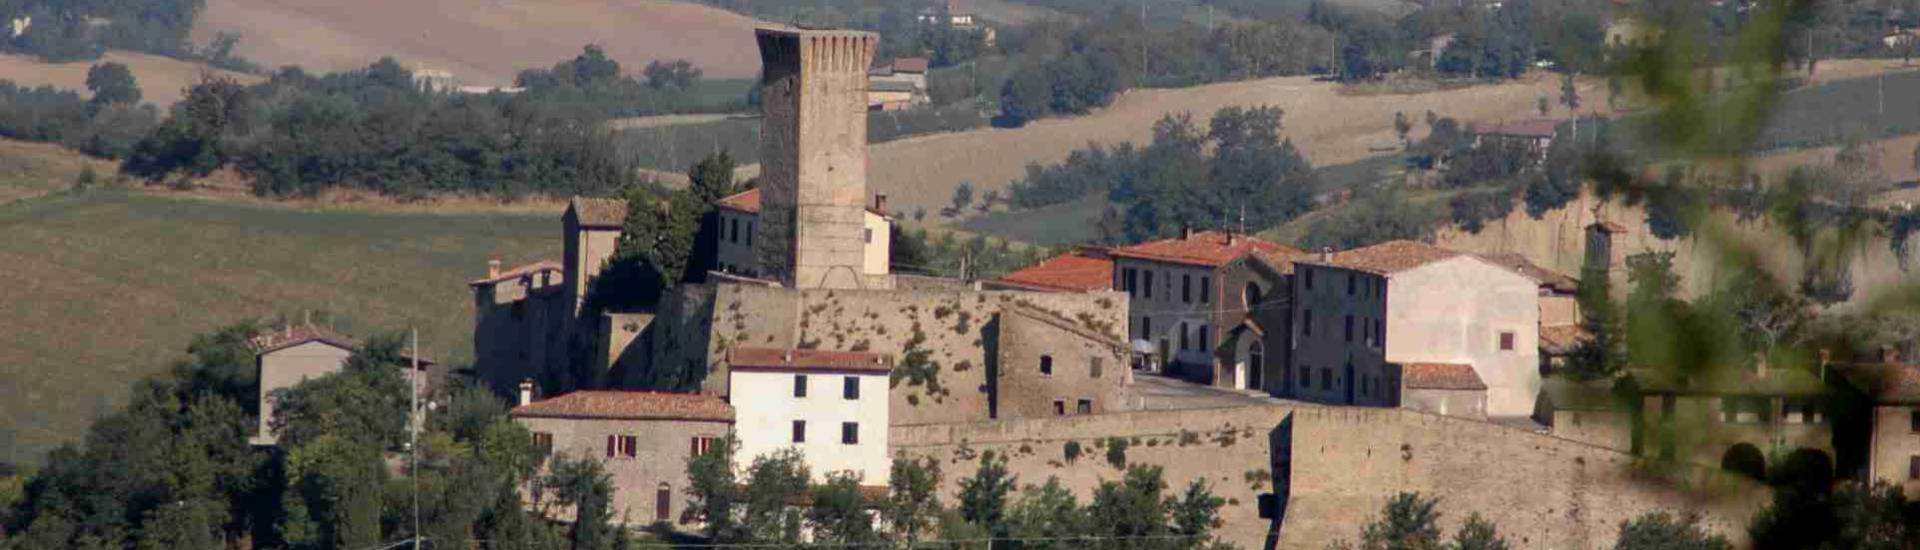 Castello di Teodorano - Borgo e castello di Teodorano foto di: |anonimo| - Comune di Meldola